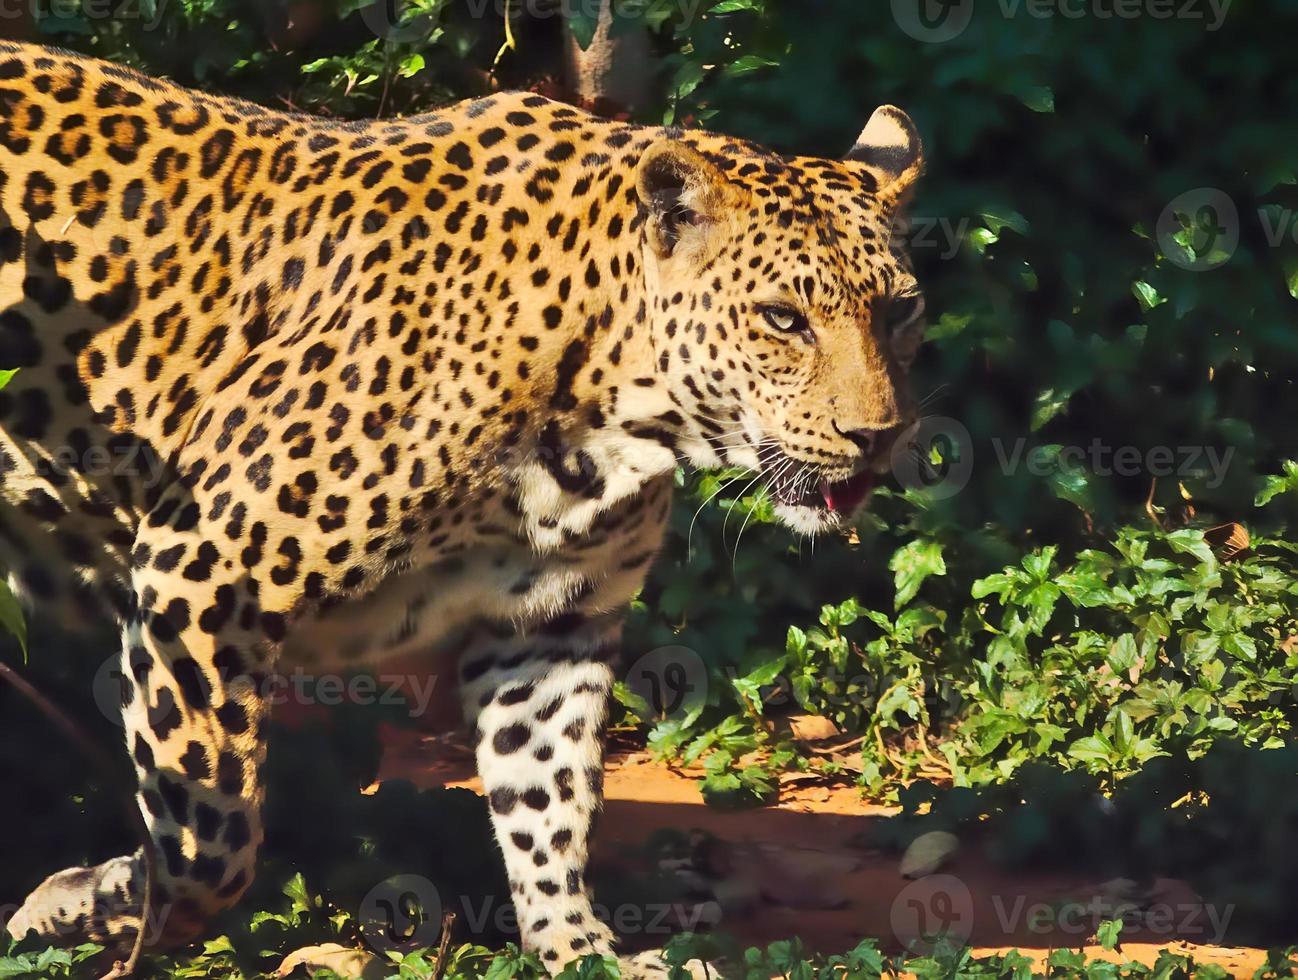 il leopardo sta camminando. foto